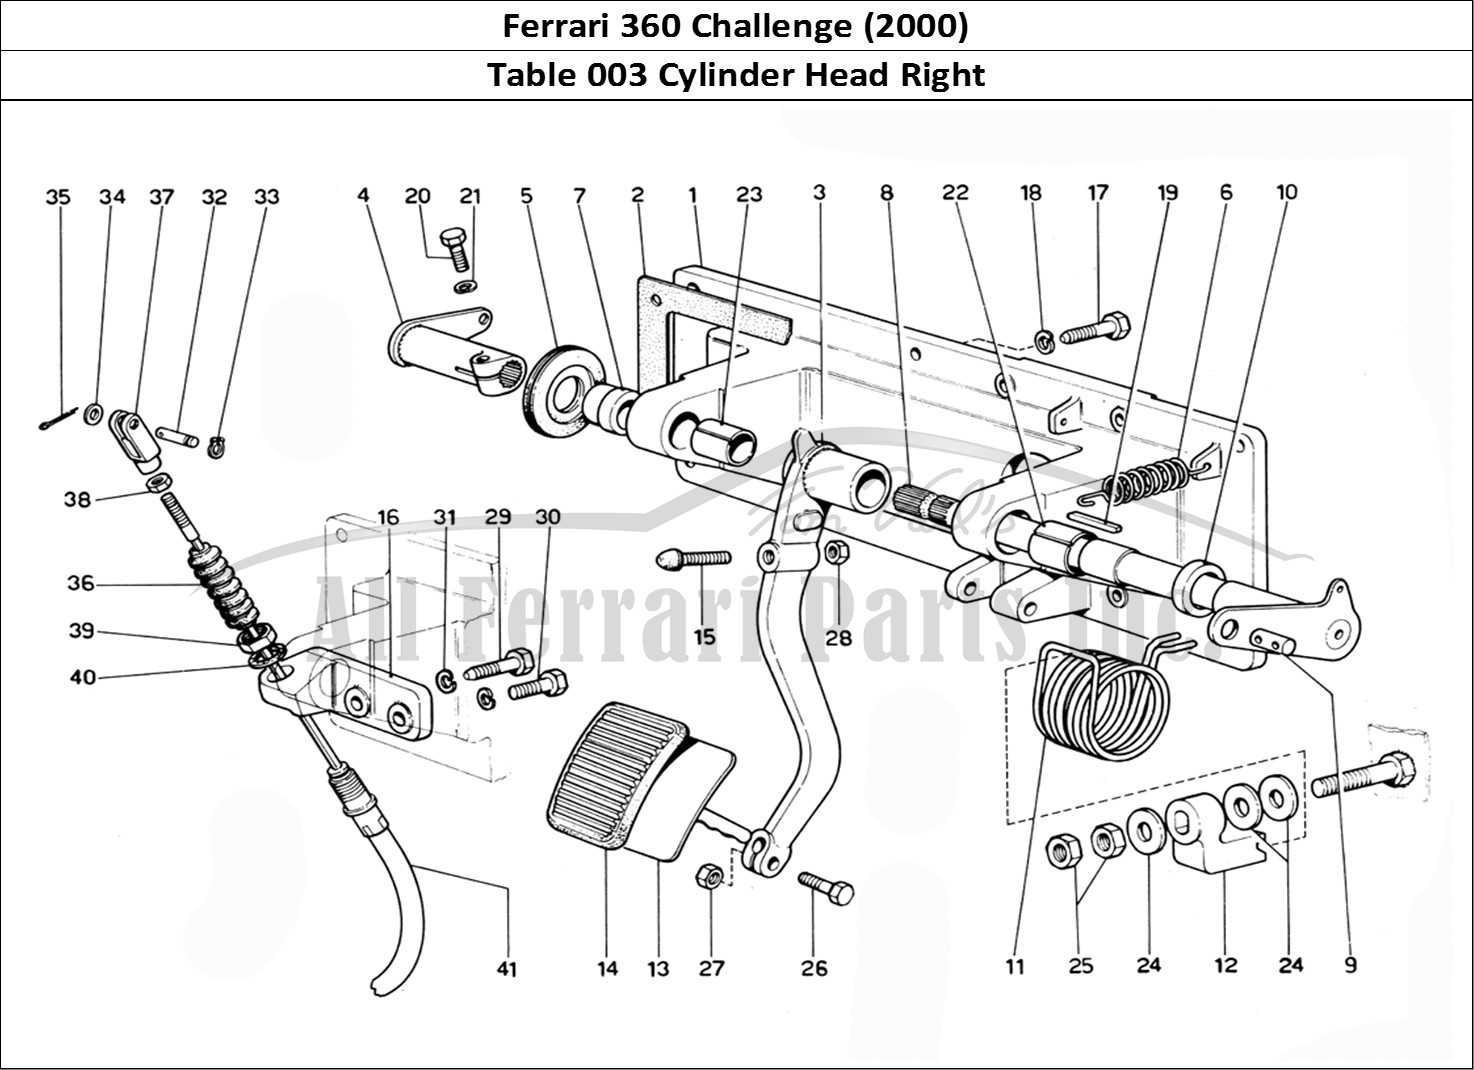 Ferrari Parts Ferrari 360 Challenge (2000) Page 003 R.H. Cylinder Head